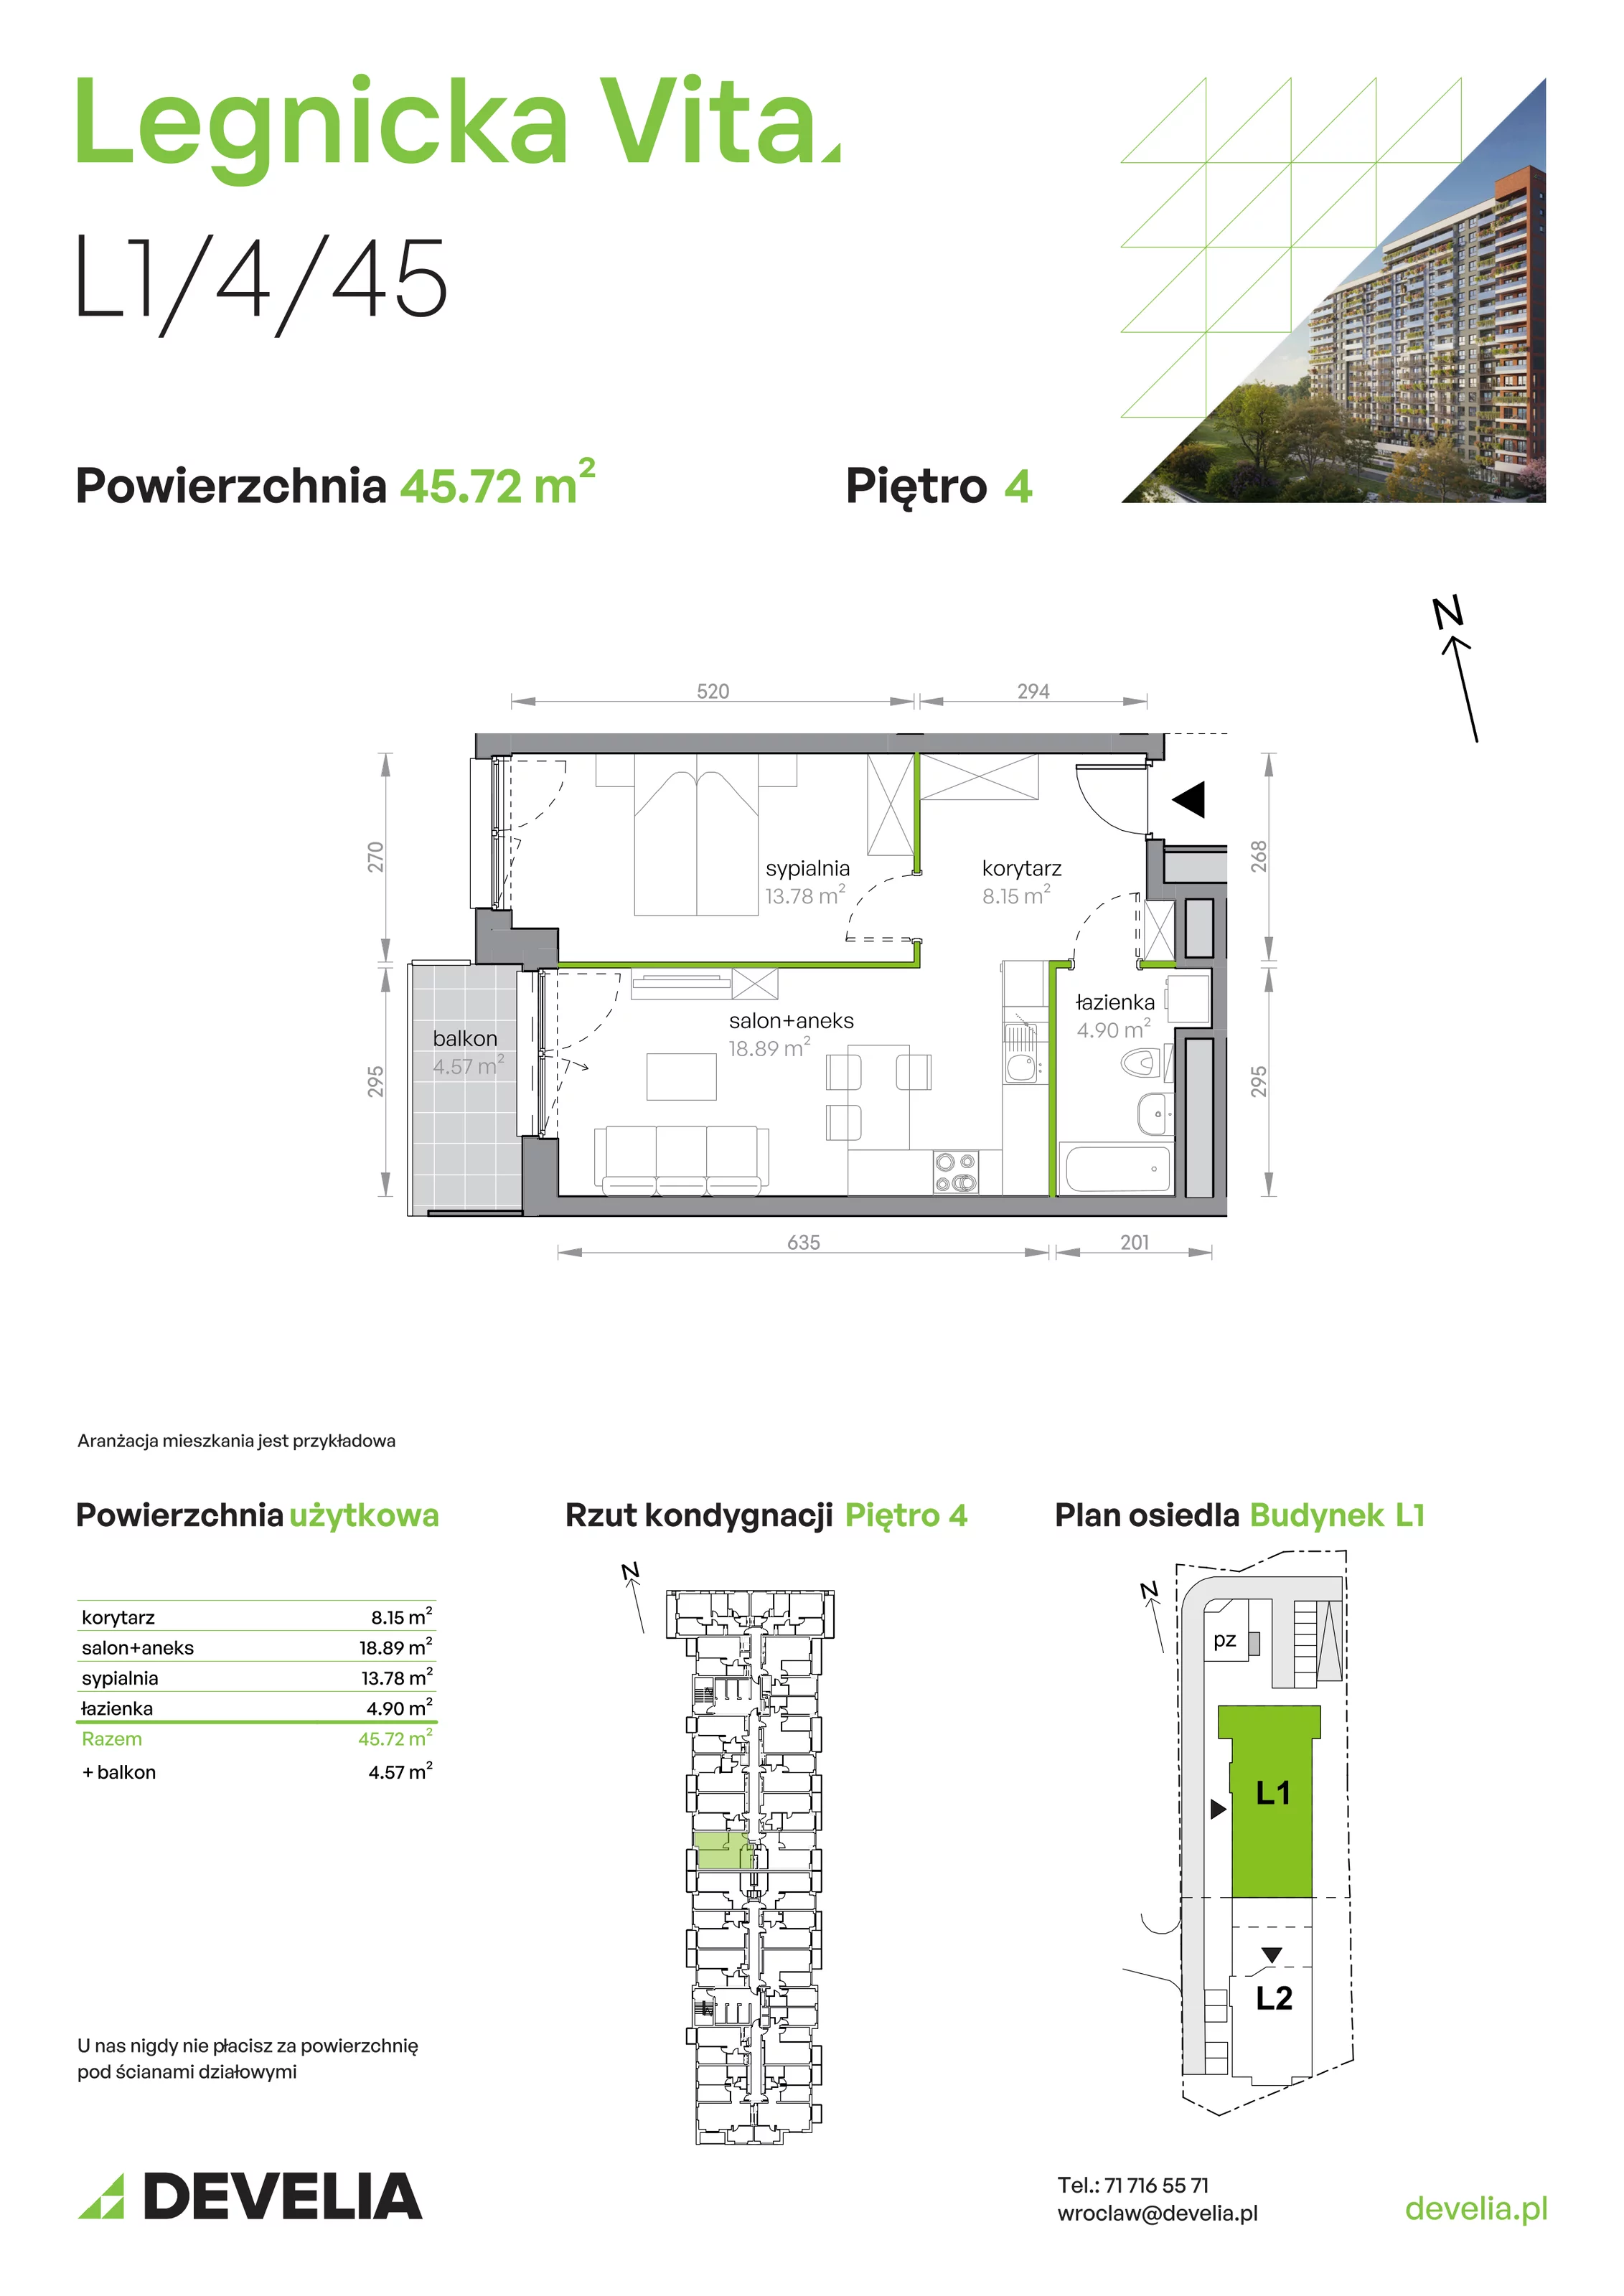 Mieszkanie 45,72 m², piętro 4, oferta nr L1/4/45, Legnicka Vita, Wrocław, Gądów-Popowice Południowe, Popowice, ul. Legnicka 52 A